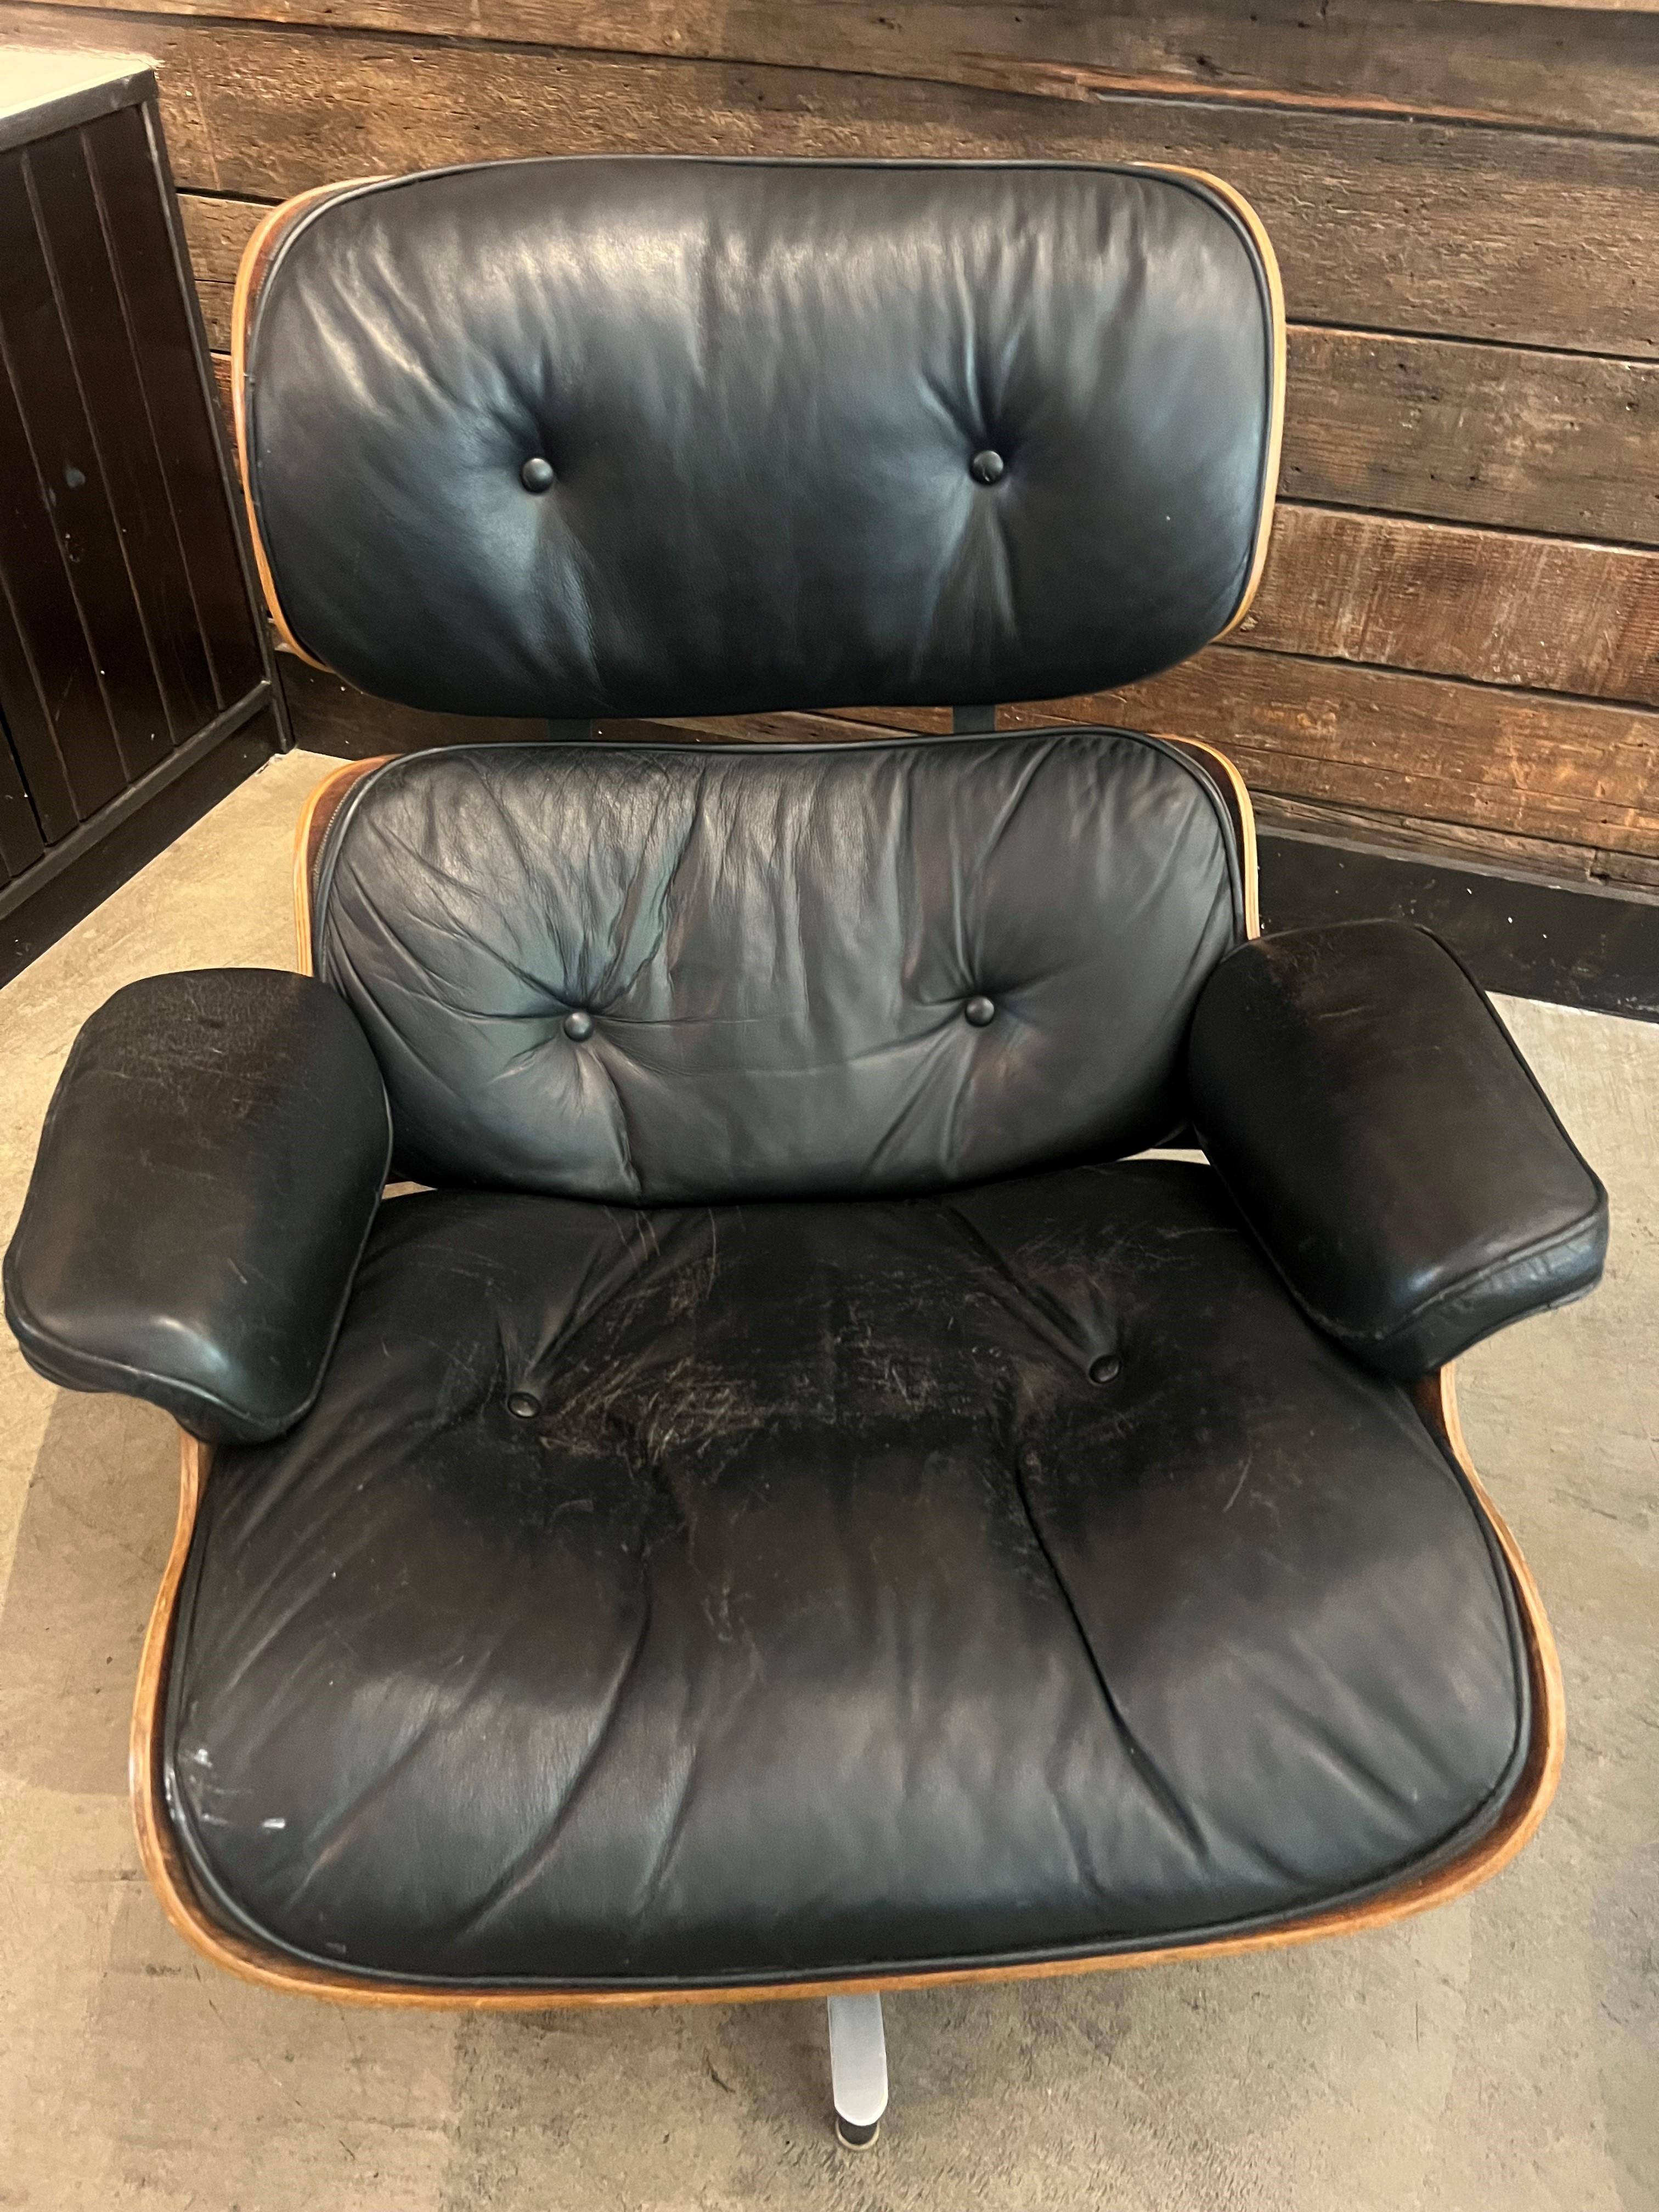 Der Lounge Chair and Ottoman ist ein ikonisches Möbelstück, das von Charles und Ray Eames entworfen wurde. Er gilt weithin als eines der bedeutendsten und beständigsten Möbelstücke der Moderne.

Der 1956 entworfene Lounge Chair und der Ottoman